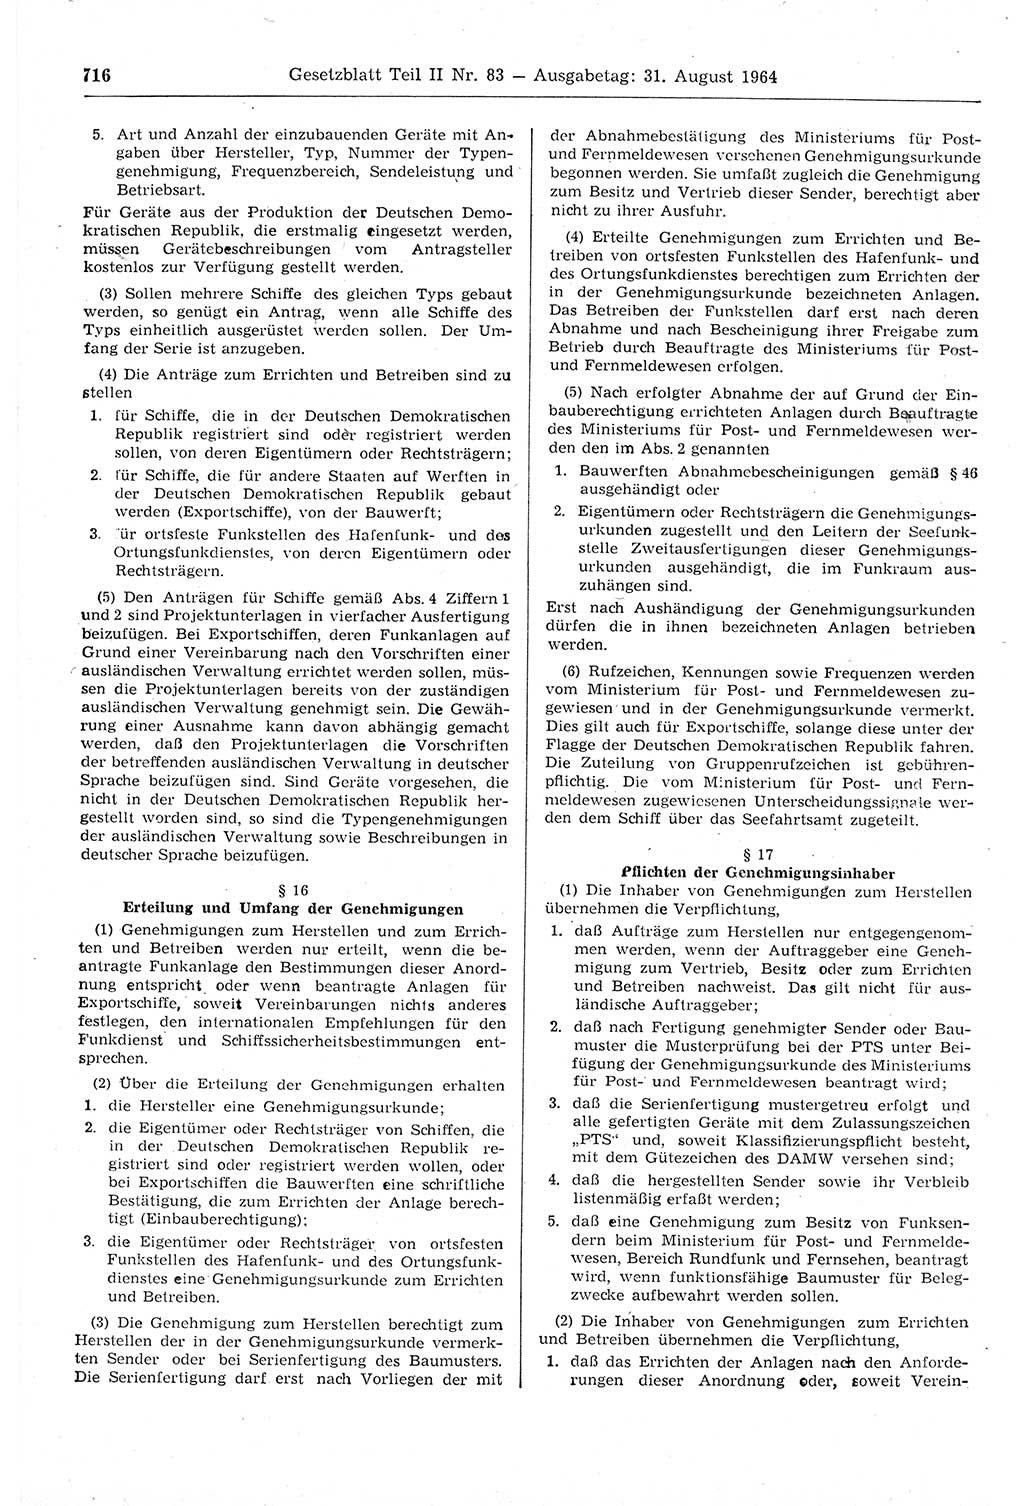 Gesetzblatt (GBl.) der Deutschen Demokratischen Republik (DDR) Teil ⅠⅠ 1964, Seite 716 (GBl. DDR ⅠⅠ 1964, S. 716)